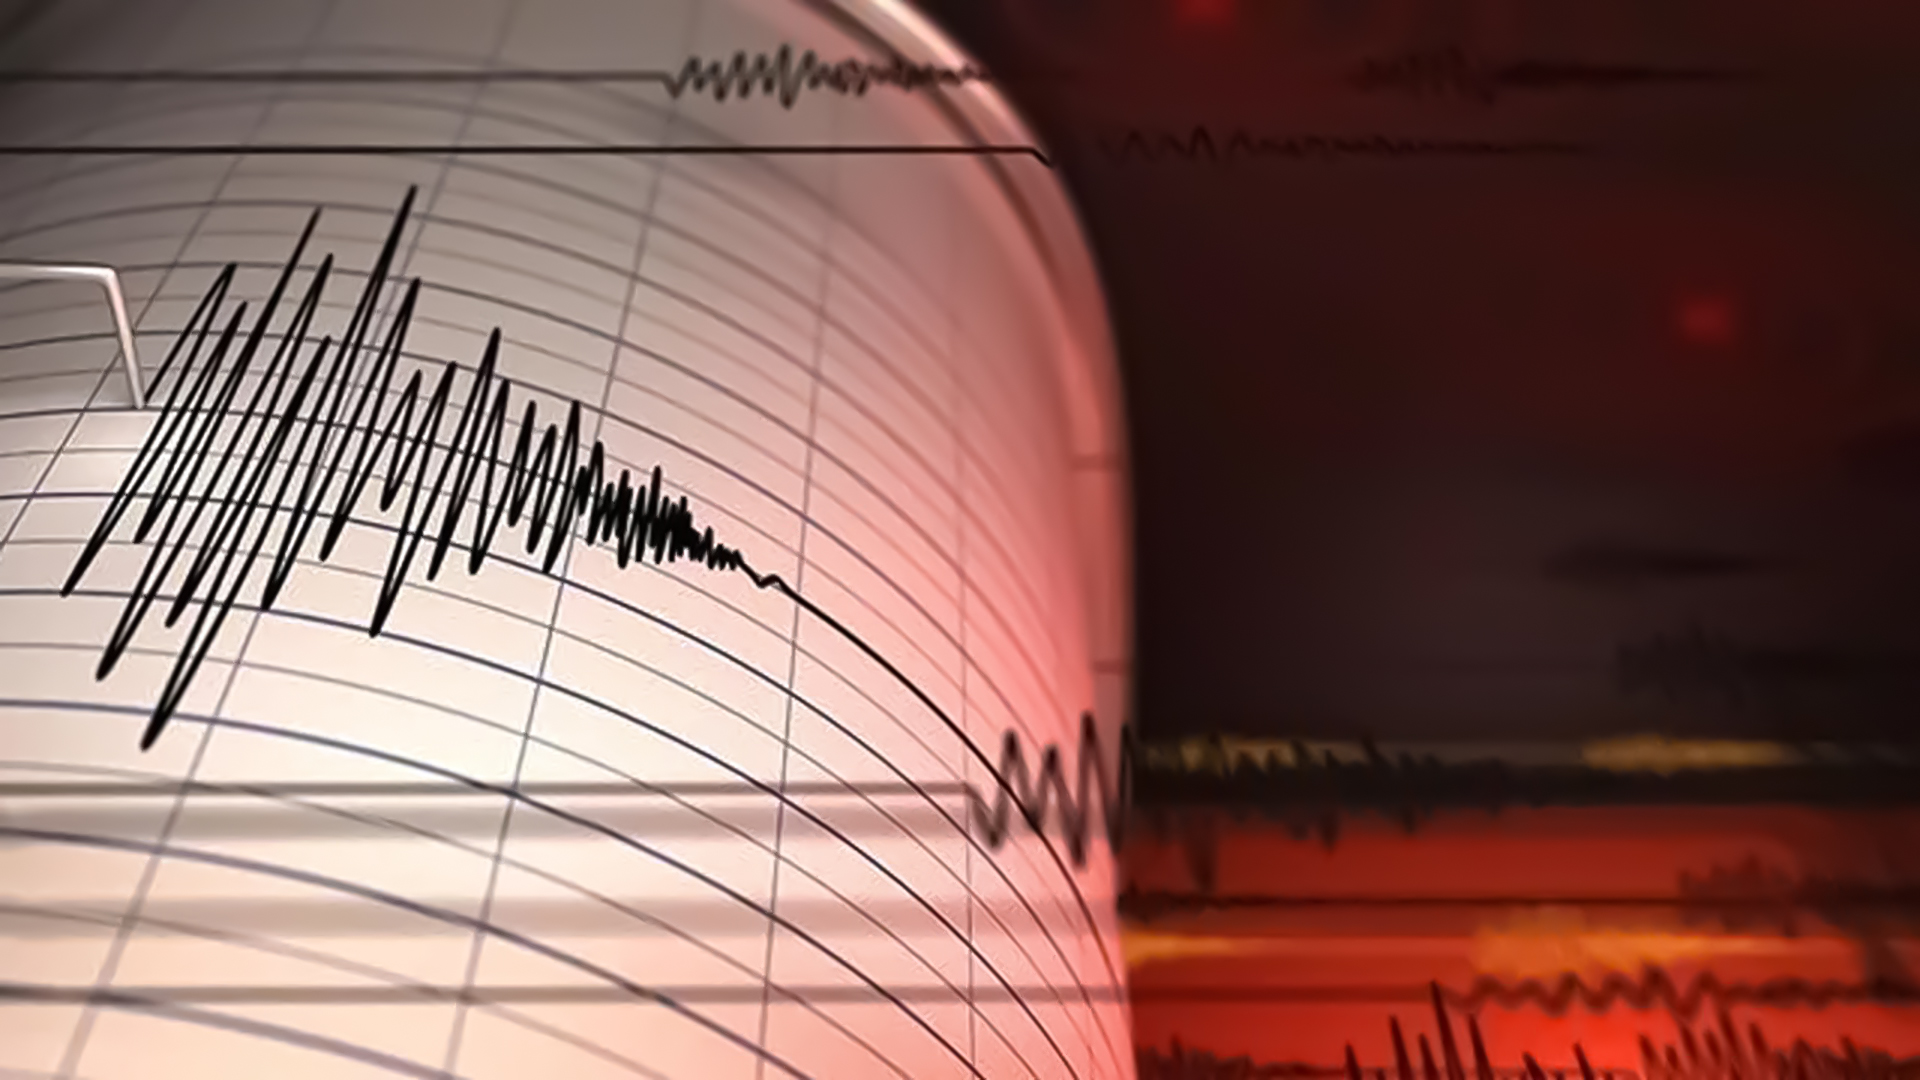 Türkiye beşik gibi sallanıyor! 4.5 büyüklüğünde deprem